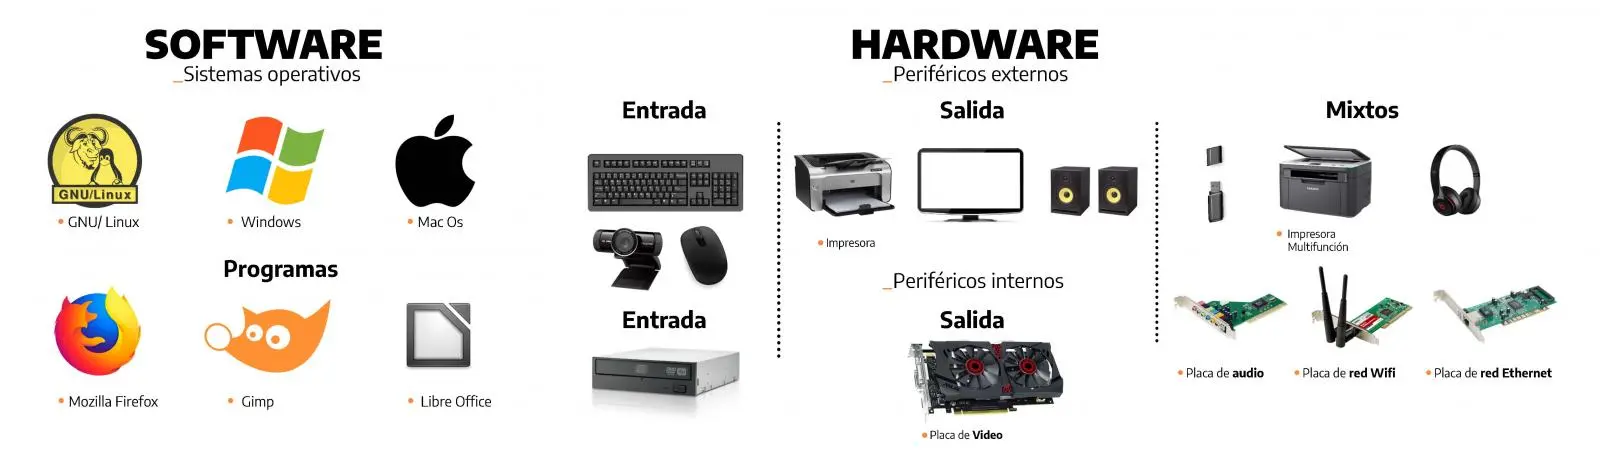 hardware computadoras tipos y usos - Qué es el hardware tipos y ejemplos